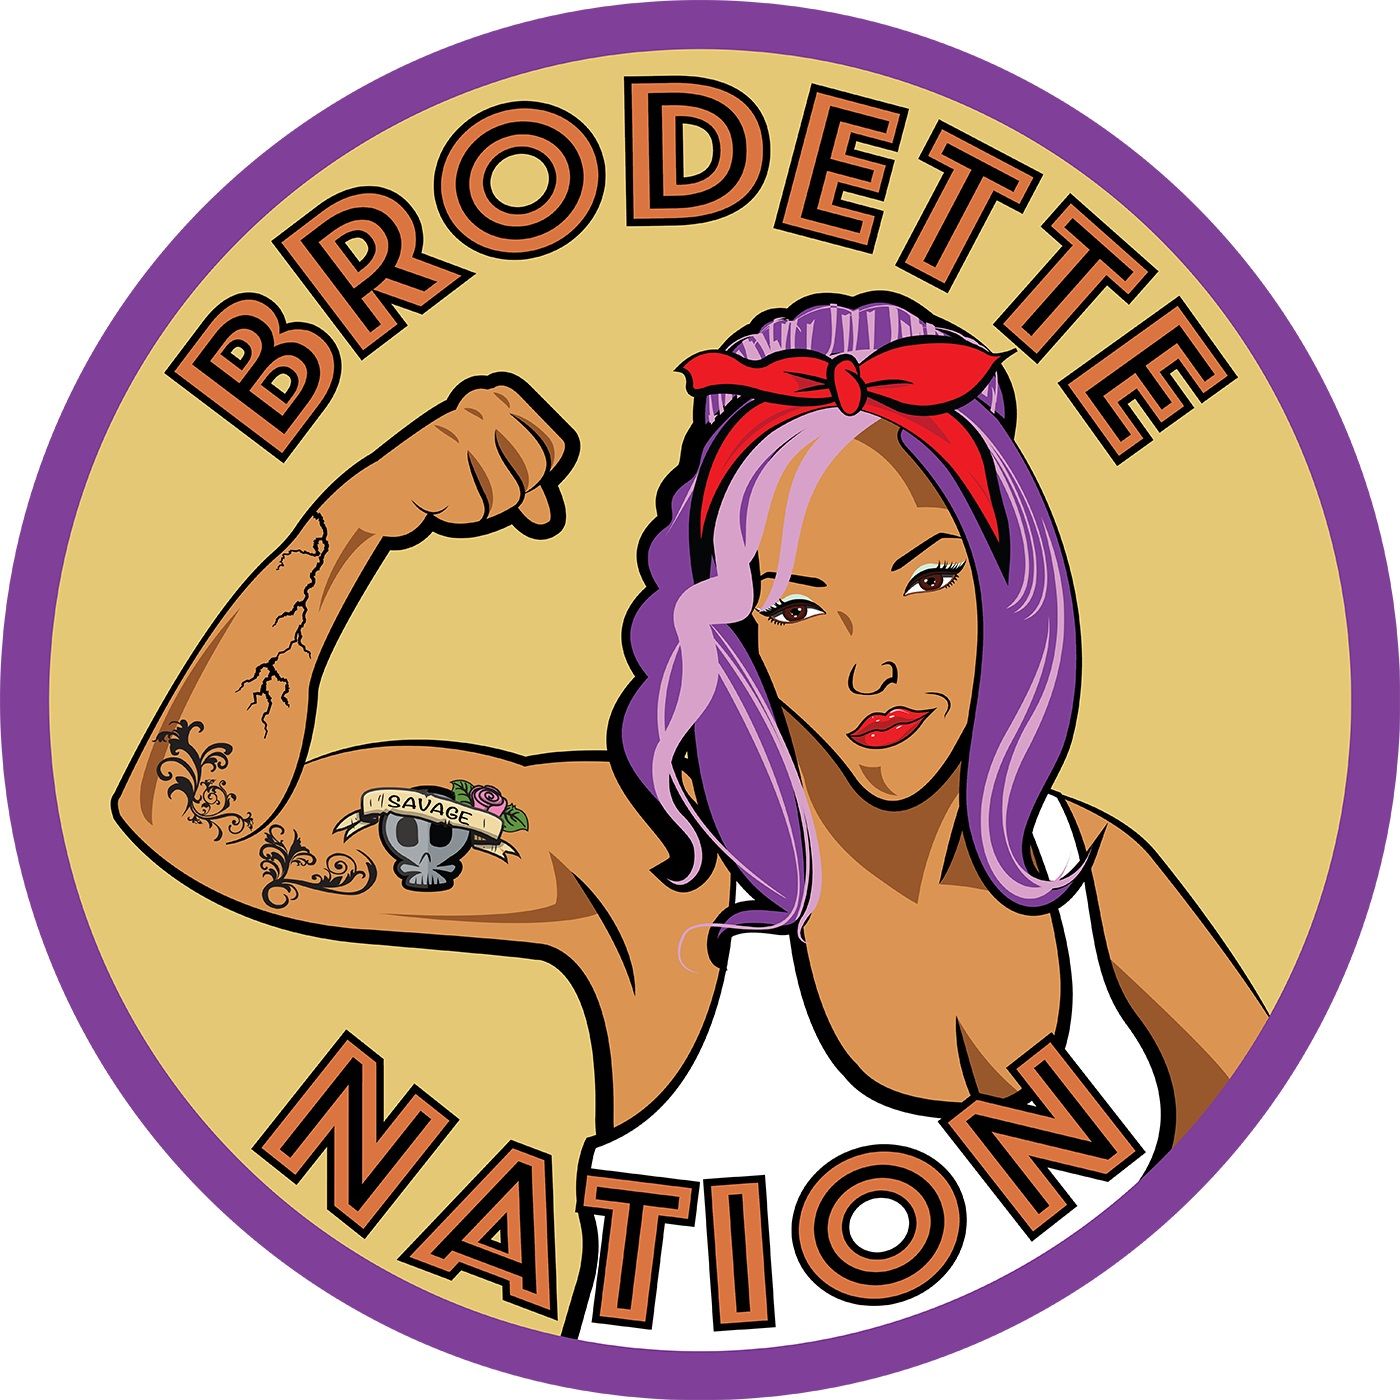 Brodette Nation